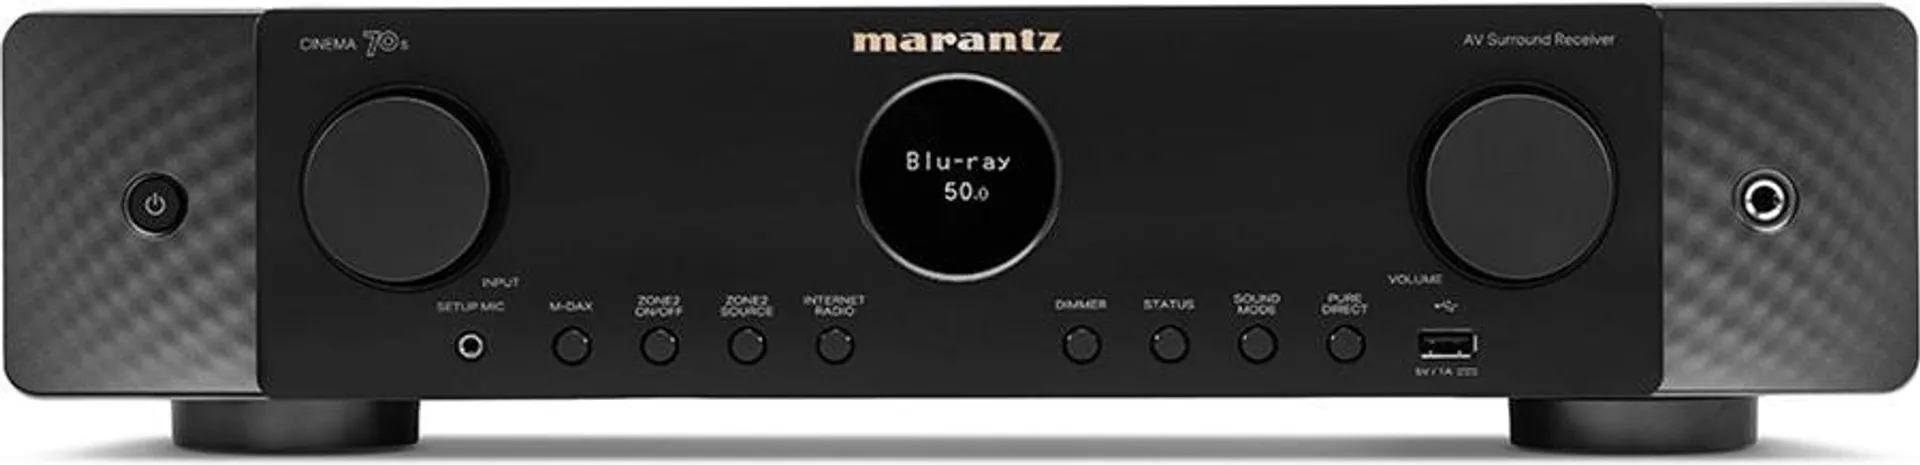 Marantz Cinema 70s 7.2 AV-receiver